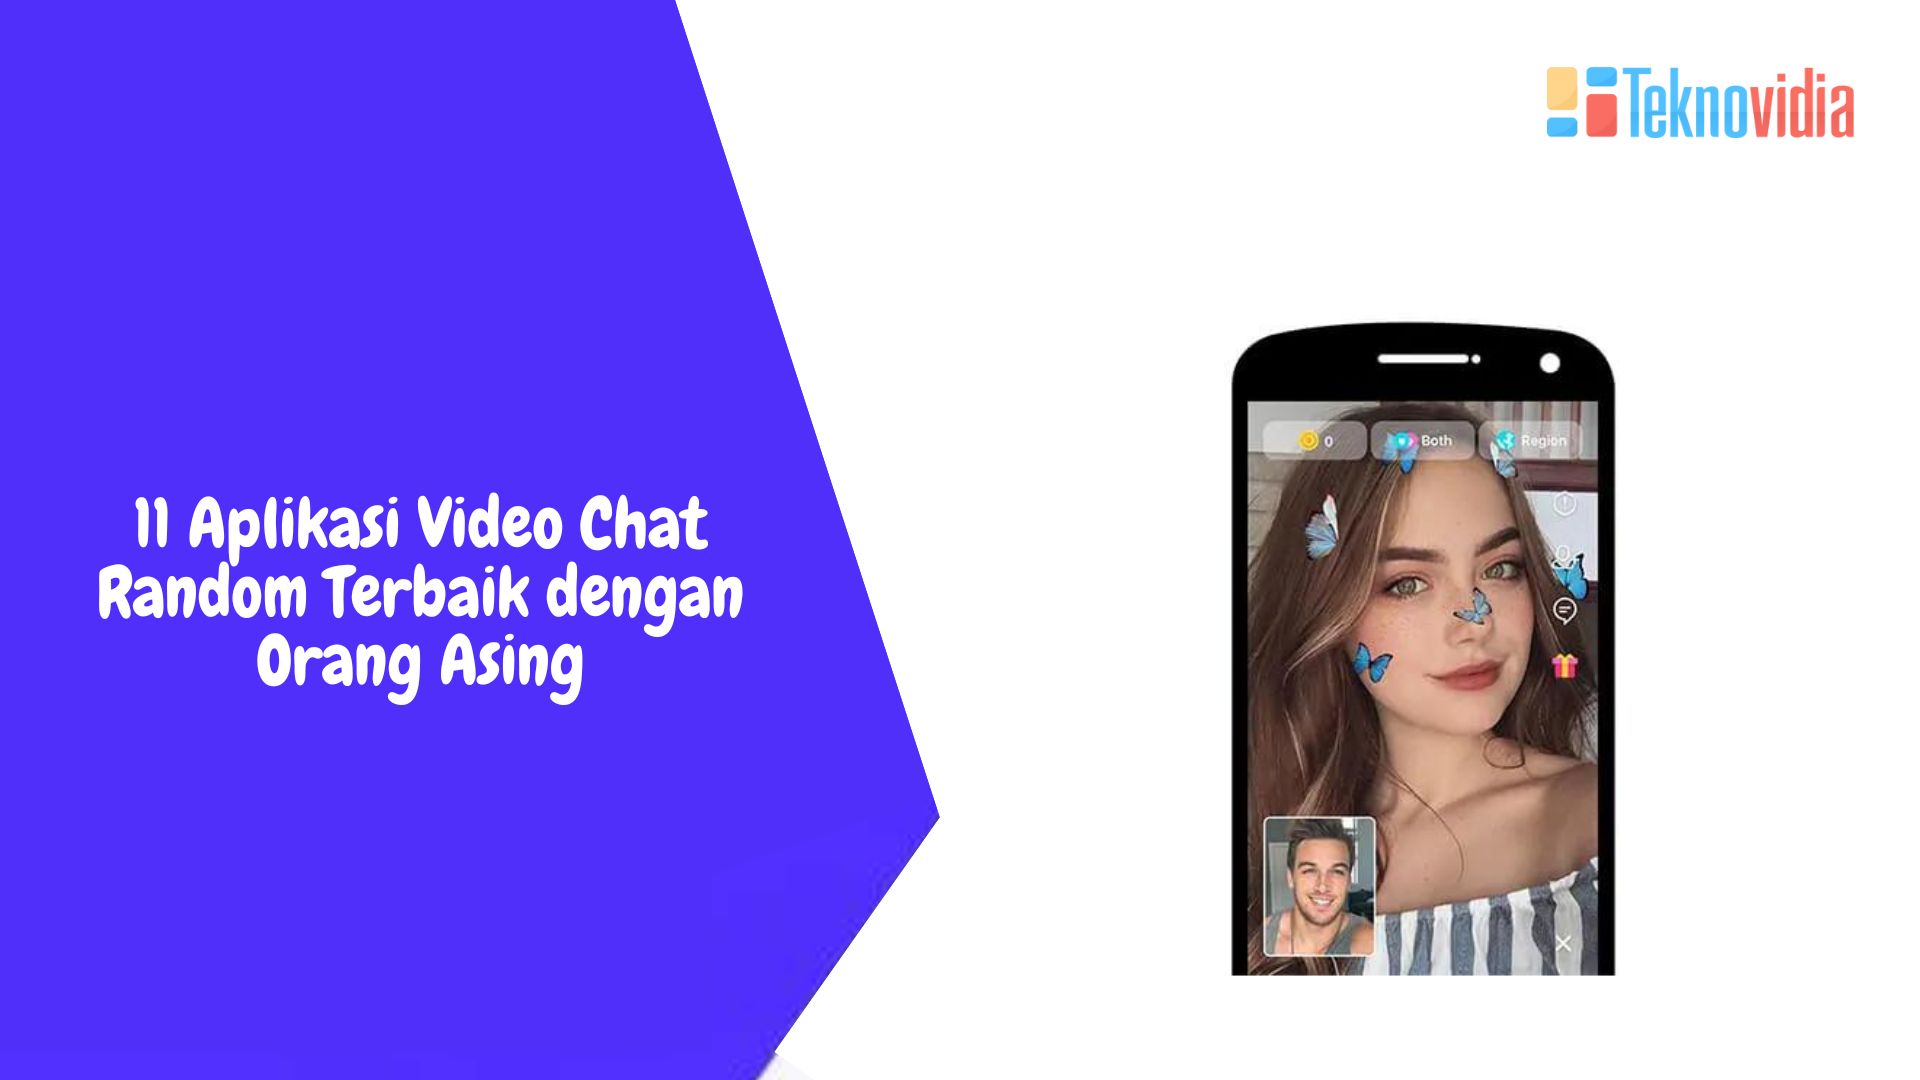 11 Aplikasi Video Chat Random Terbaik dengan Orang Asing